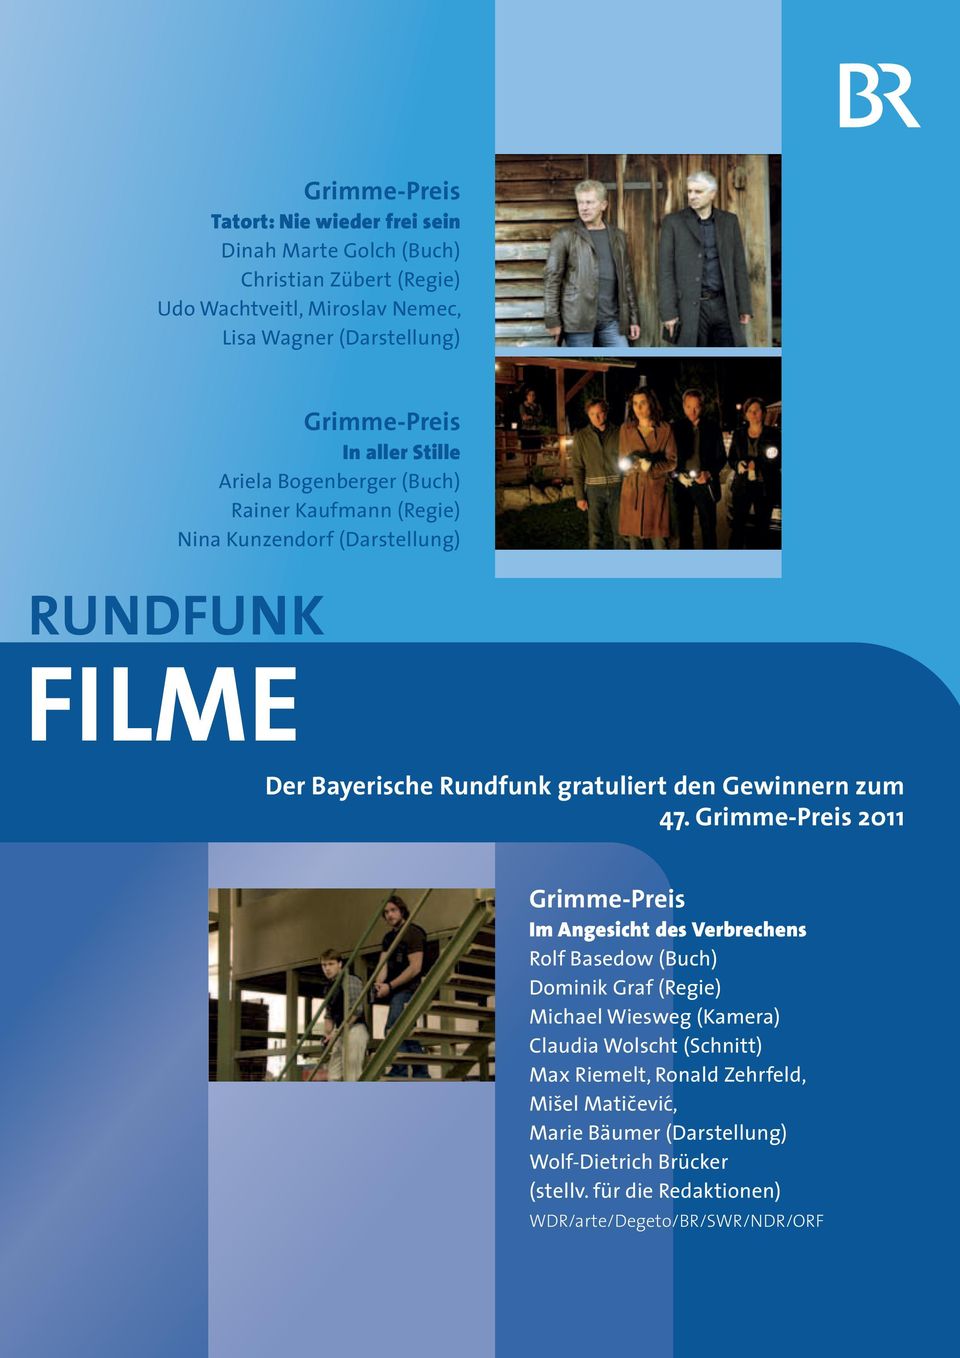 Adolf-Grimme-Preis 47. Grimme-Preis 2011 und gratulieren allen unseren Preisträgern.